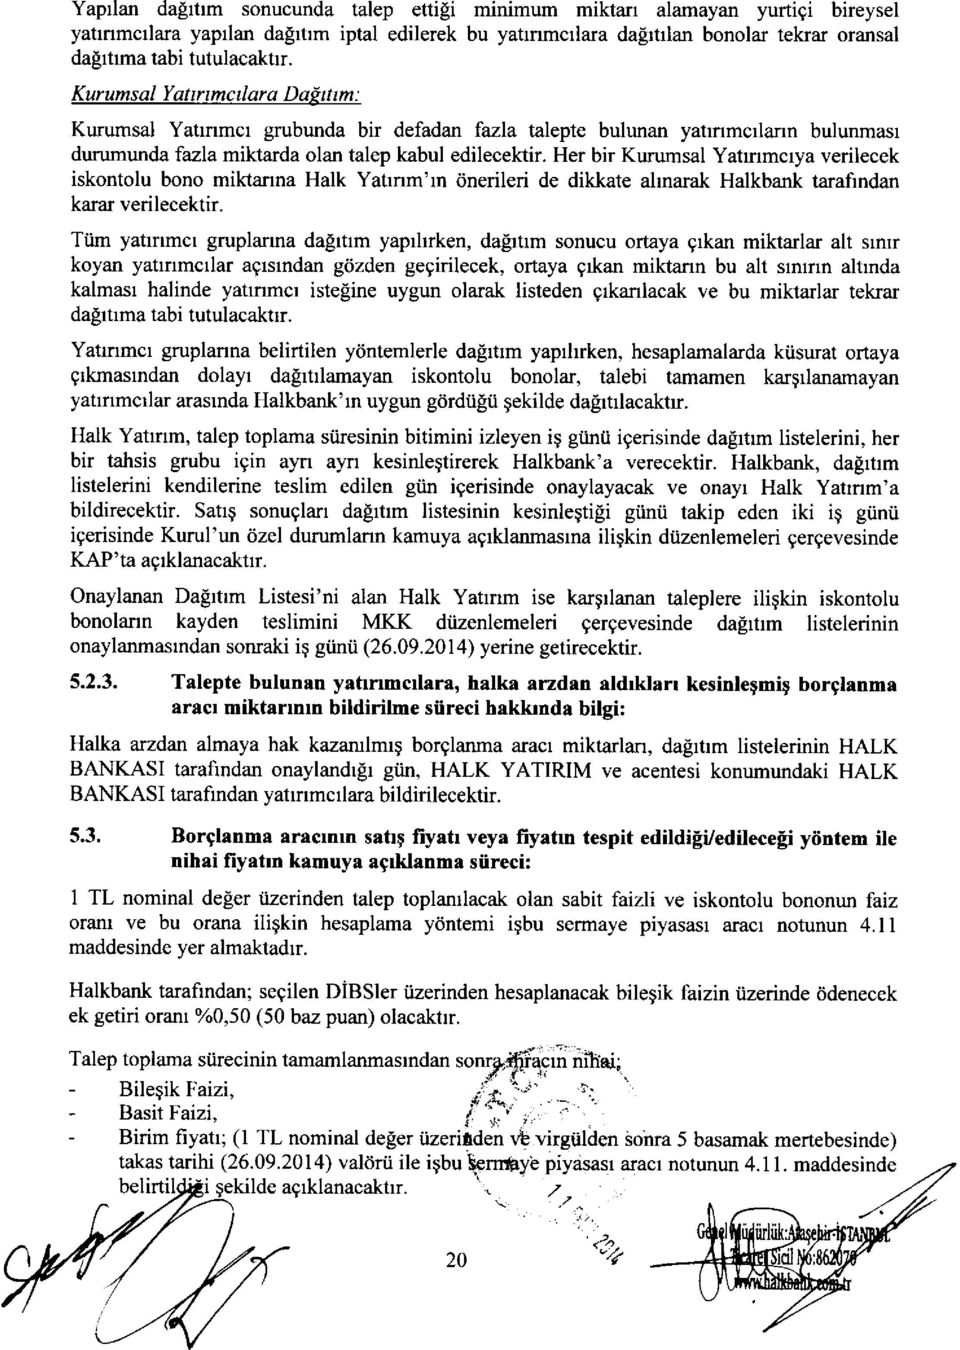 Her bir Kurumsal Yatrnmcrya verilecek iskontolu bono miktanna Halk Yatrnm'rn dnerileri de dikkate allnamk Halkbank tarafrndan karar verilecektir.